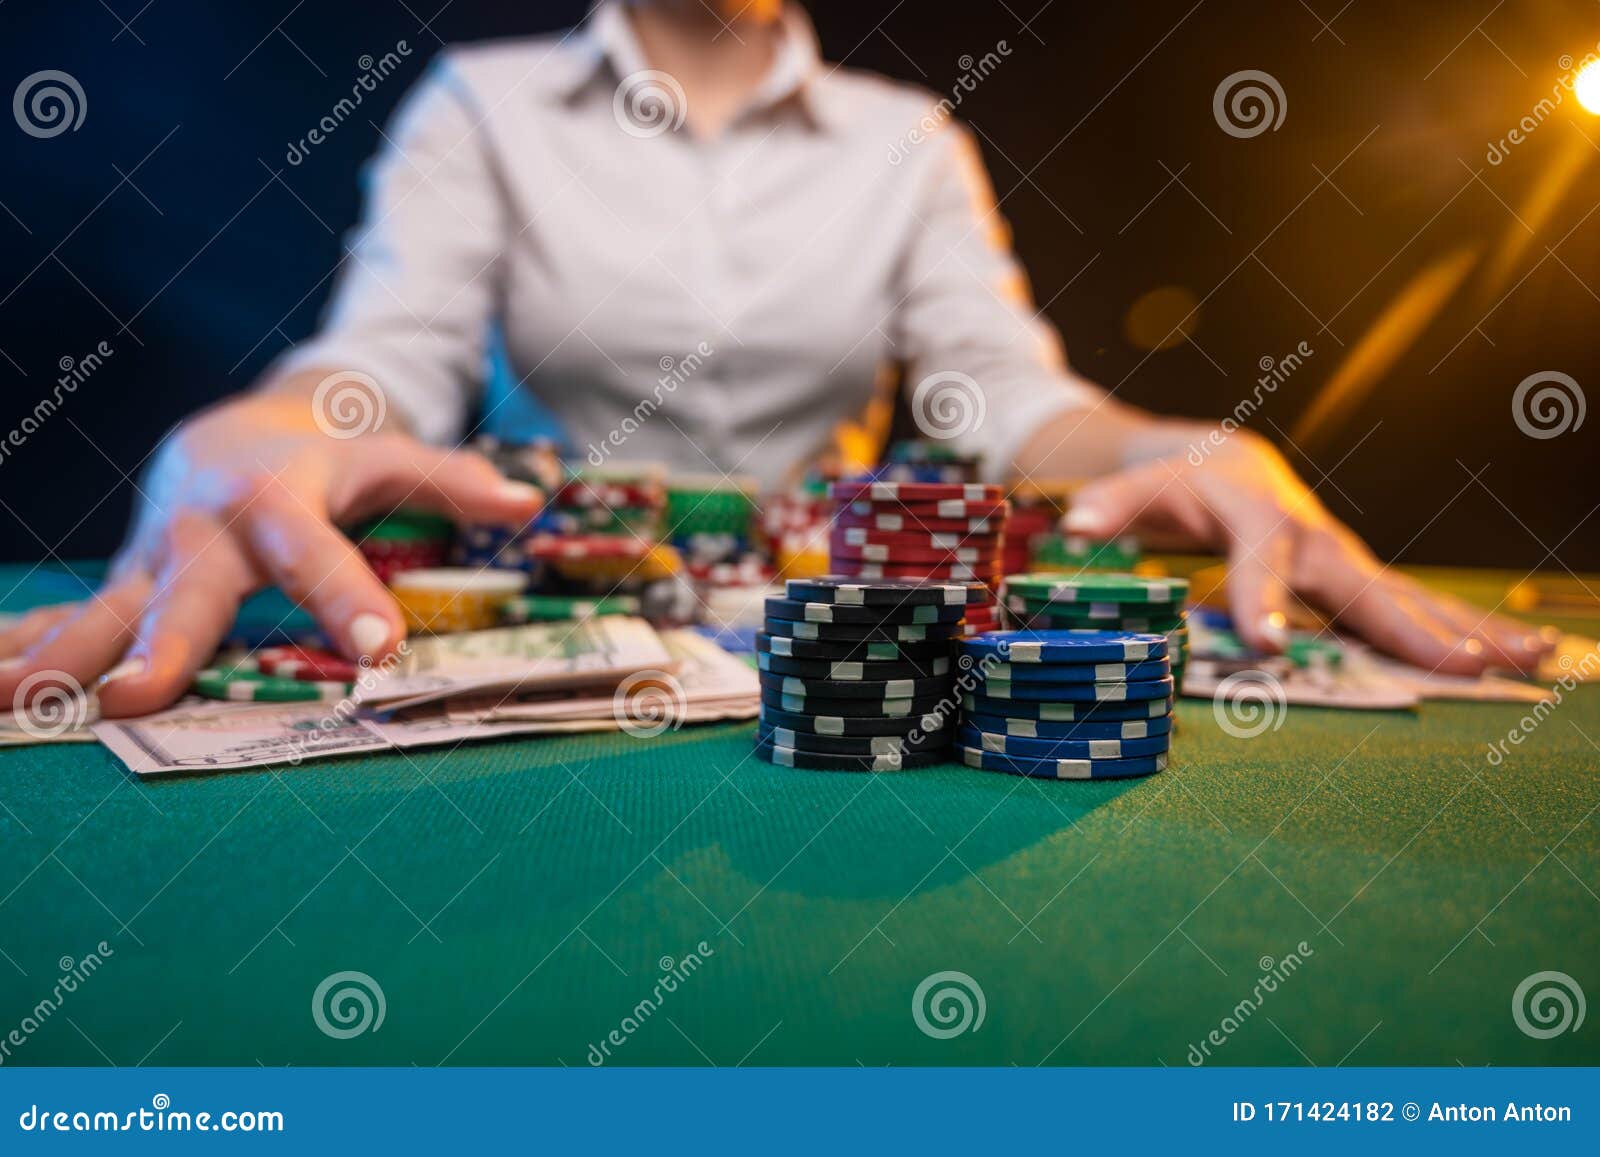 10 formas creativas de mejorar su bonos de casino